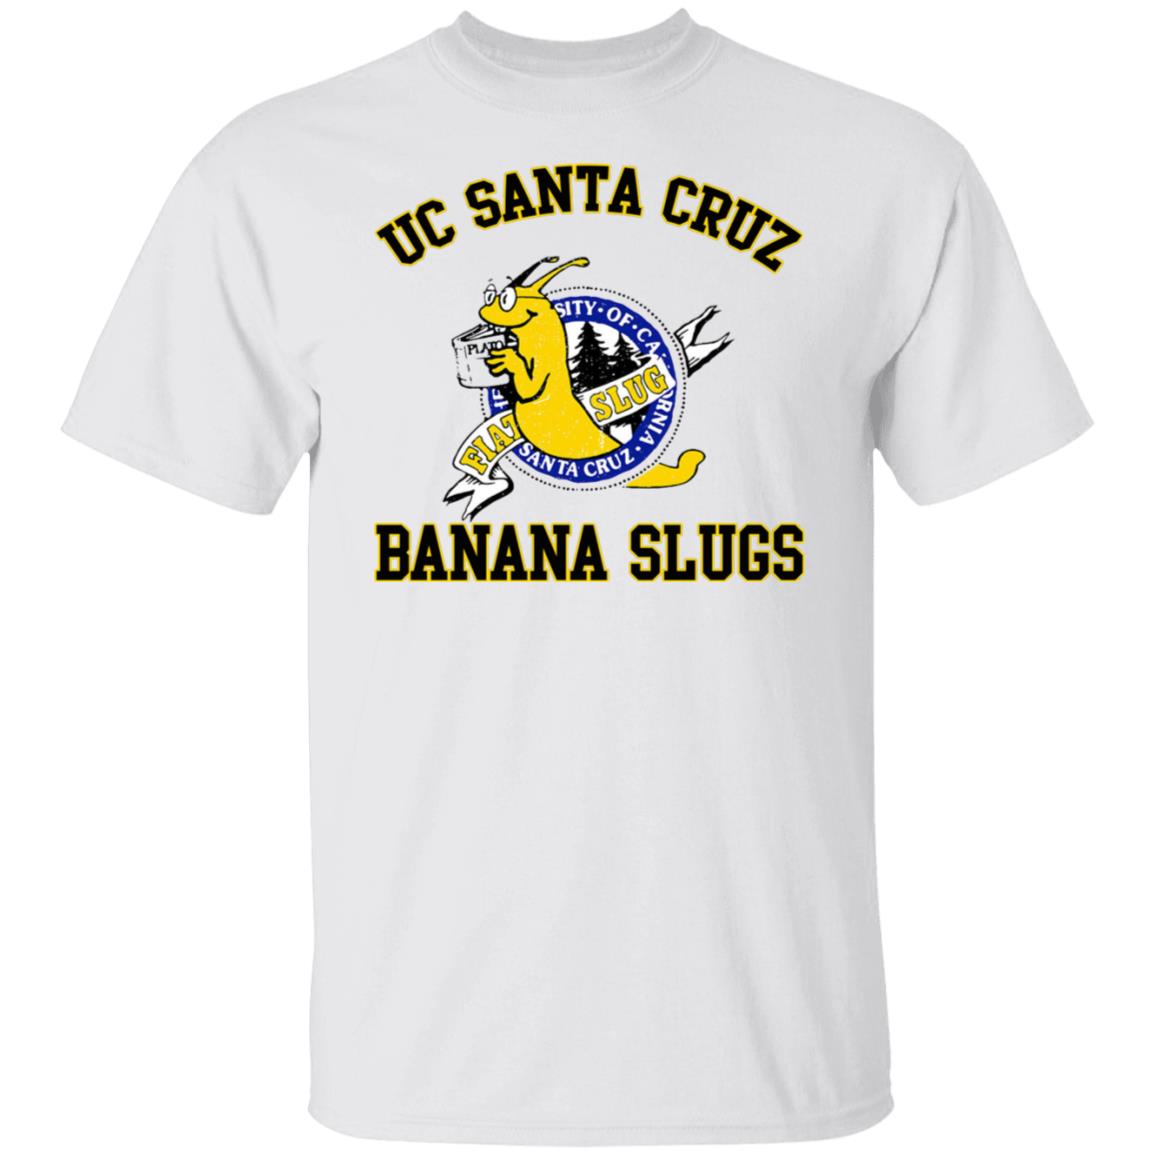 UC Santa Cruz Banana Slugs Shirt | Teemoonley.com